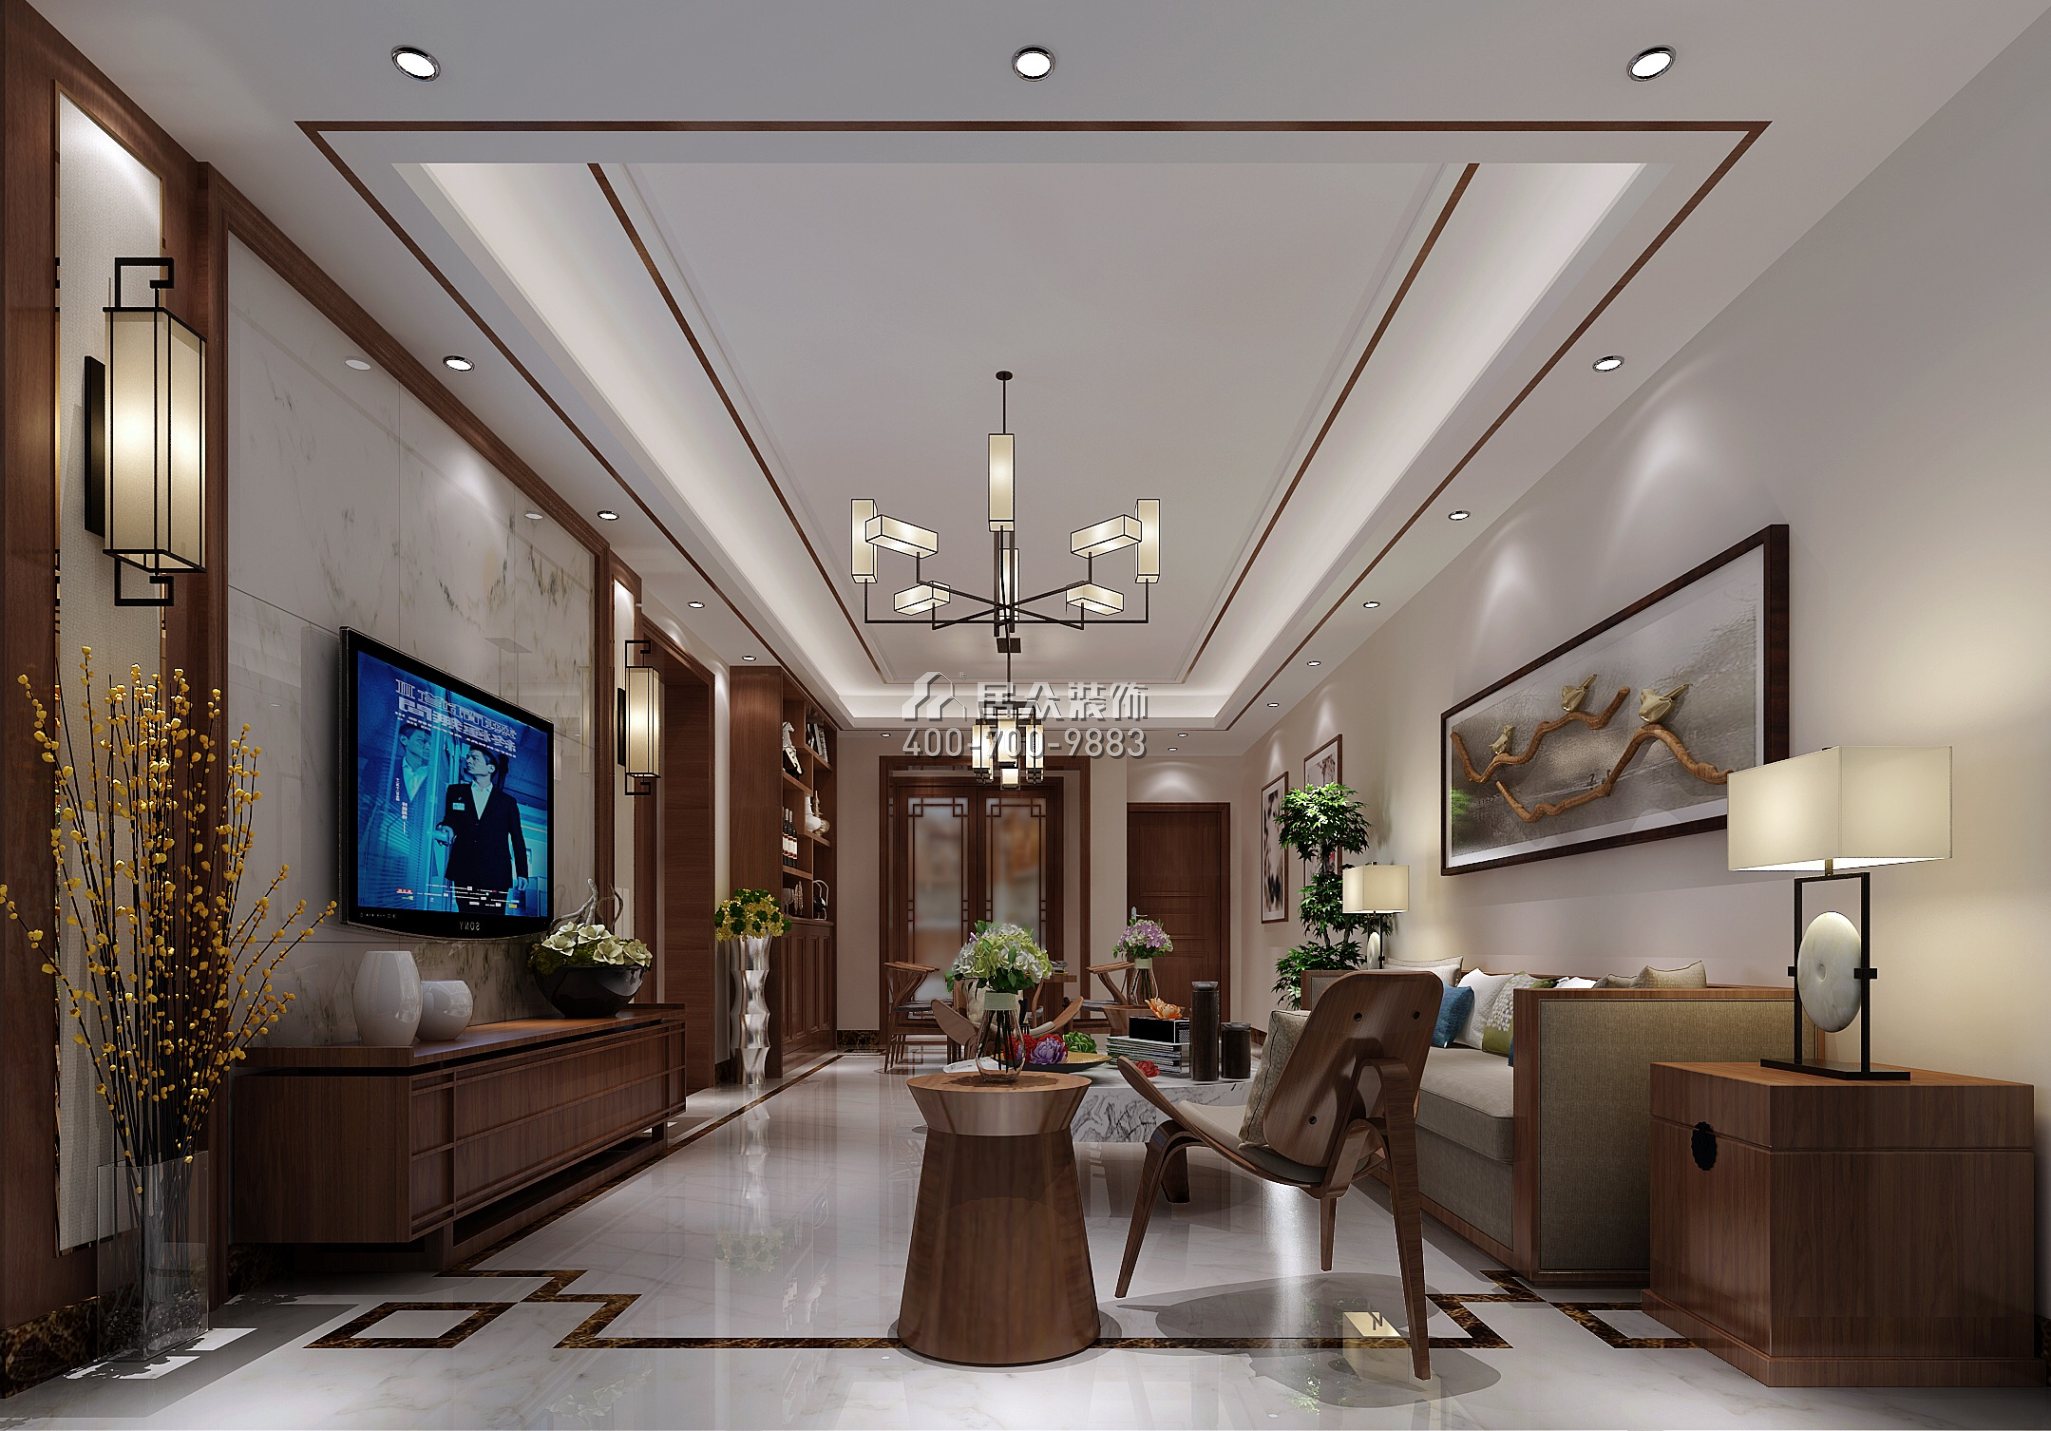 嘉都汇120平方米新古典风格平层户型客厅装修效果图